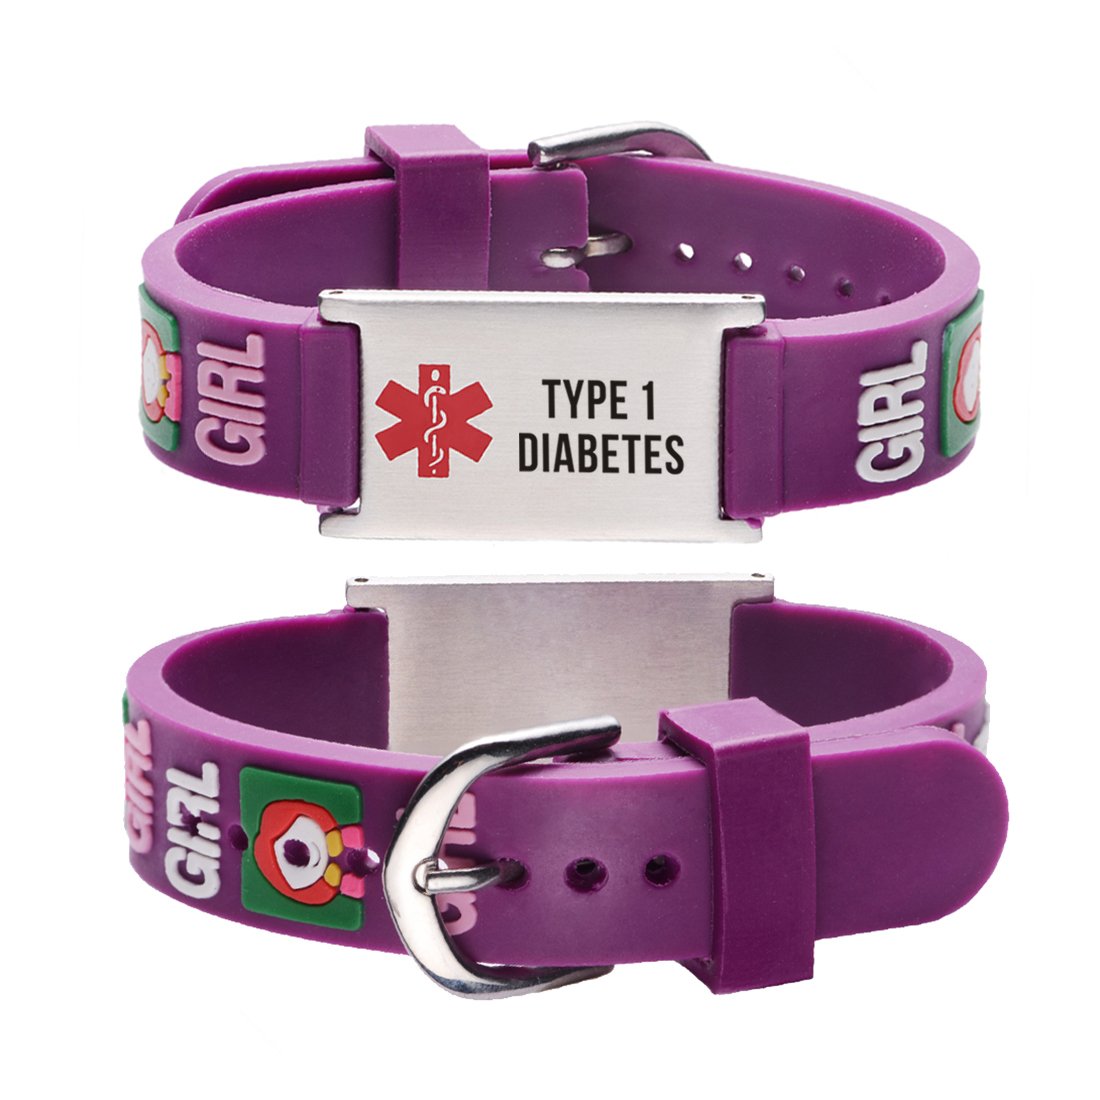 Type 1 Diabetes bracelets for kids-little girl